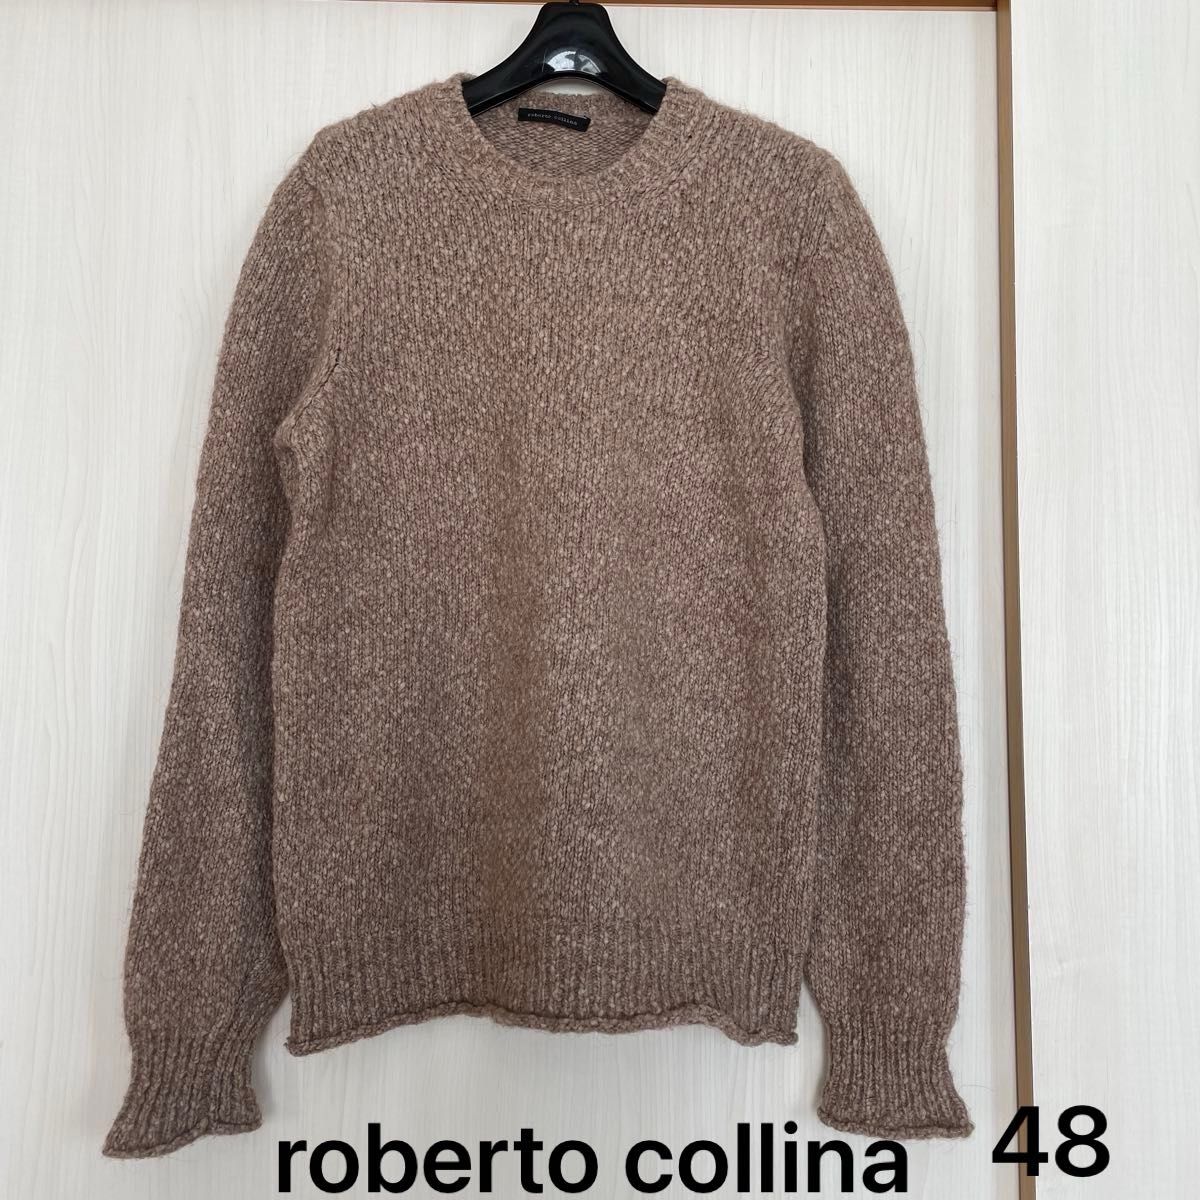 roberto collina ロベルトコリーナ メンズ ニット イタリア製 48 セーター 長袖 カジュアル ウール